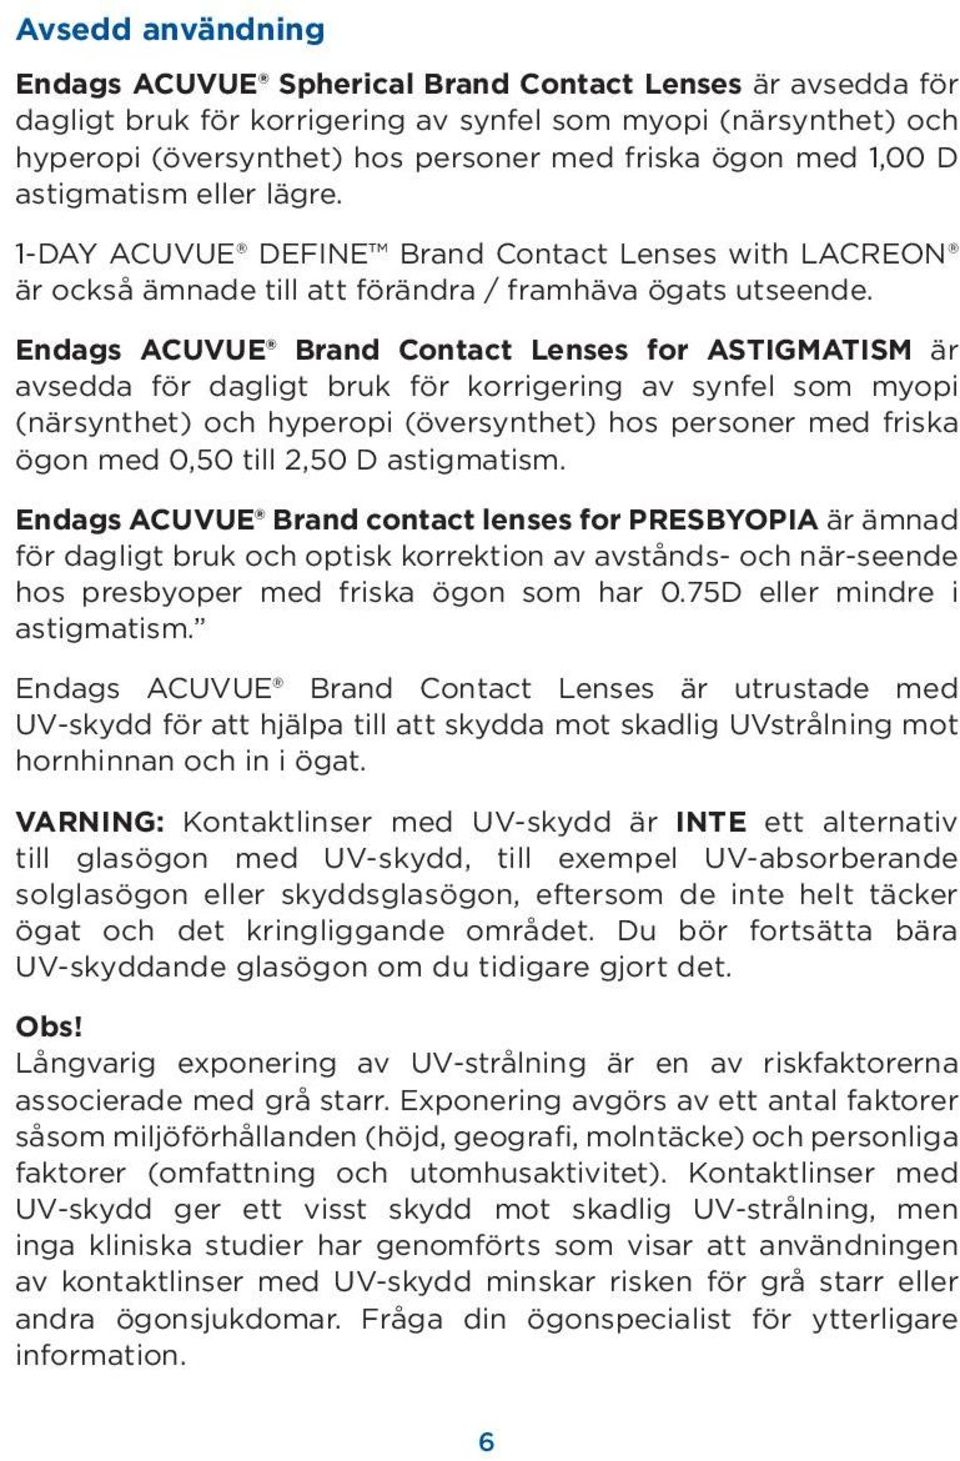 Endags ACUVUE Brand Contact Lenses for ASTIGMATISM är avsedda för dagligt bruk för korrigering av synfel som myopi (närsynthet) och hyperopi (översynthet) hos personer med friska ögon med 0,50 till